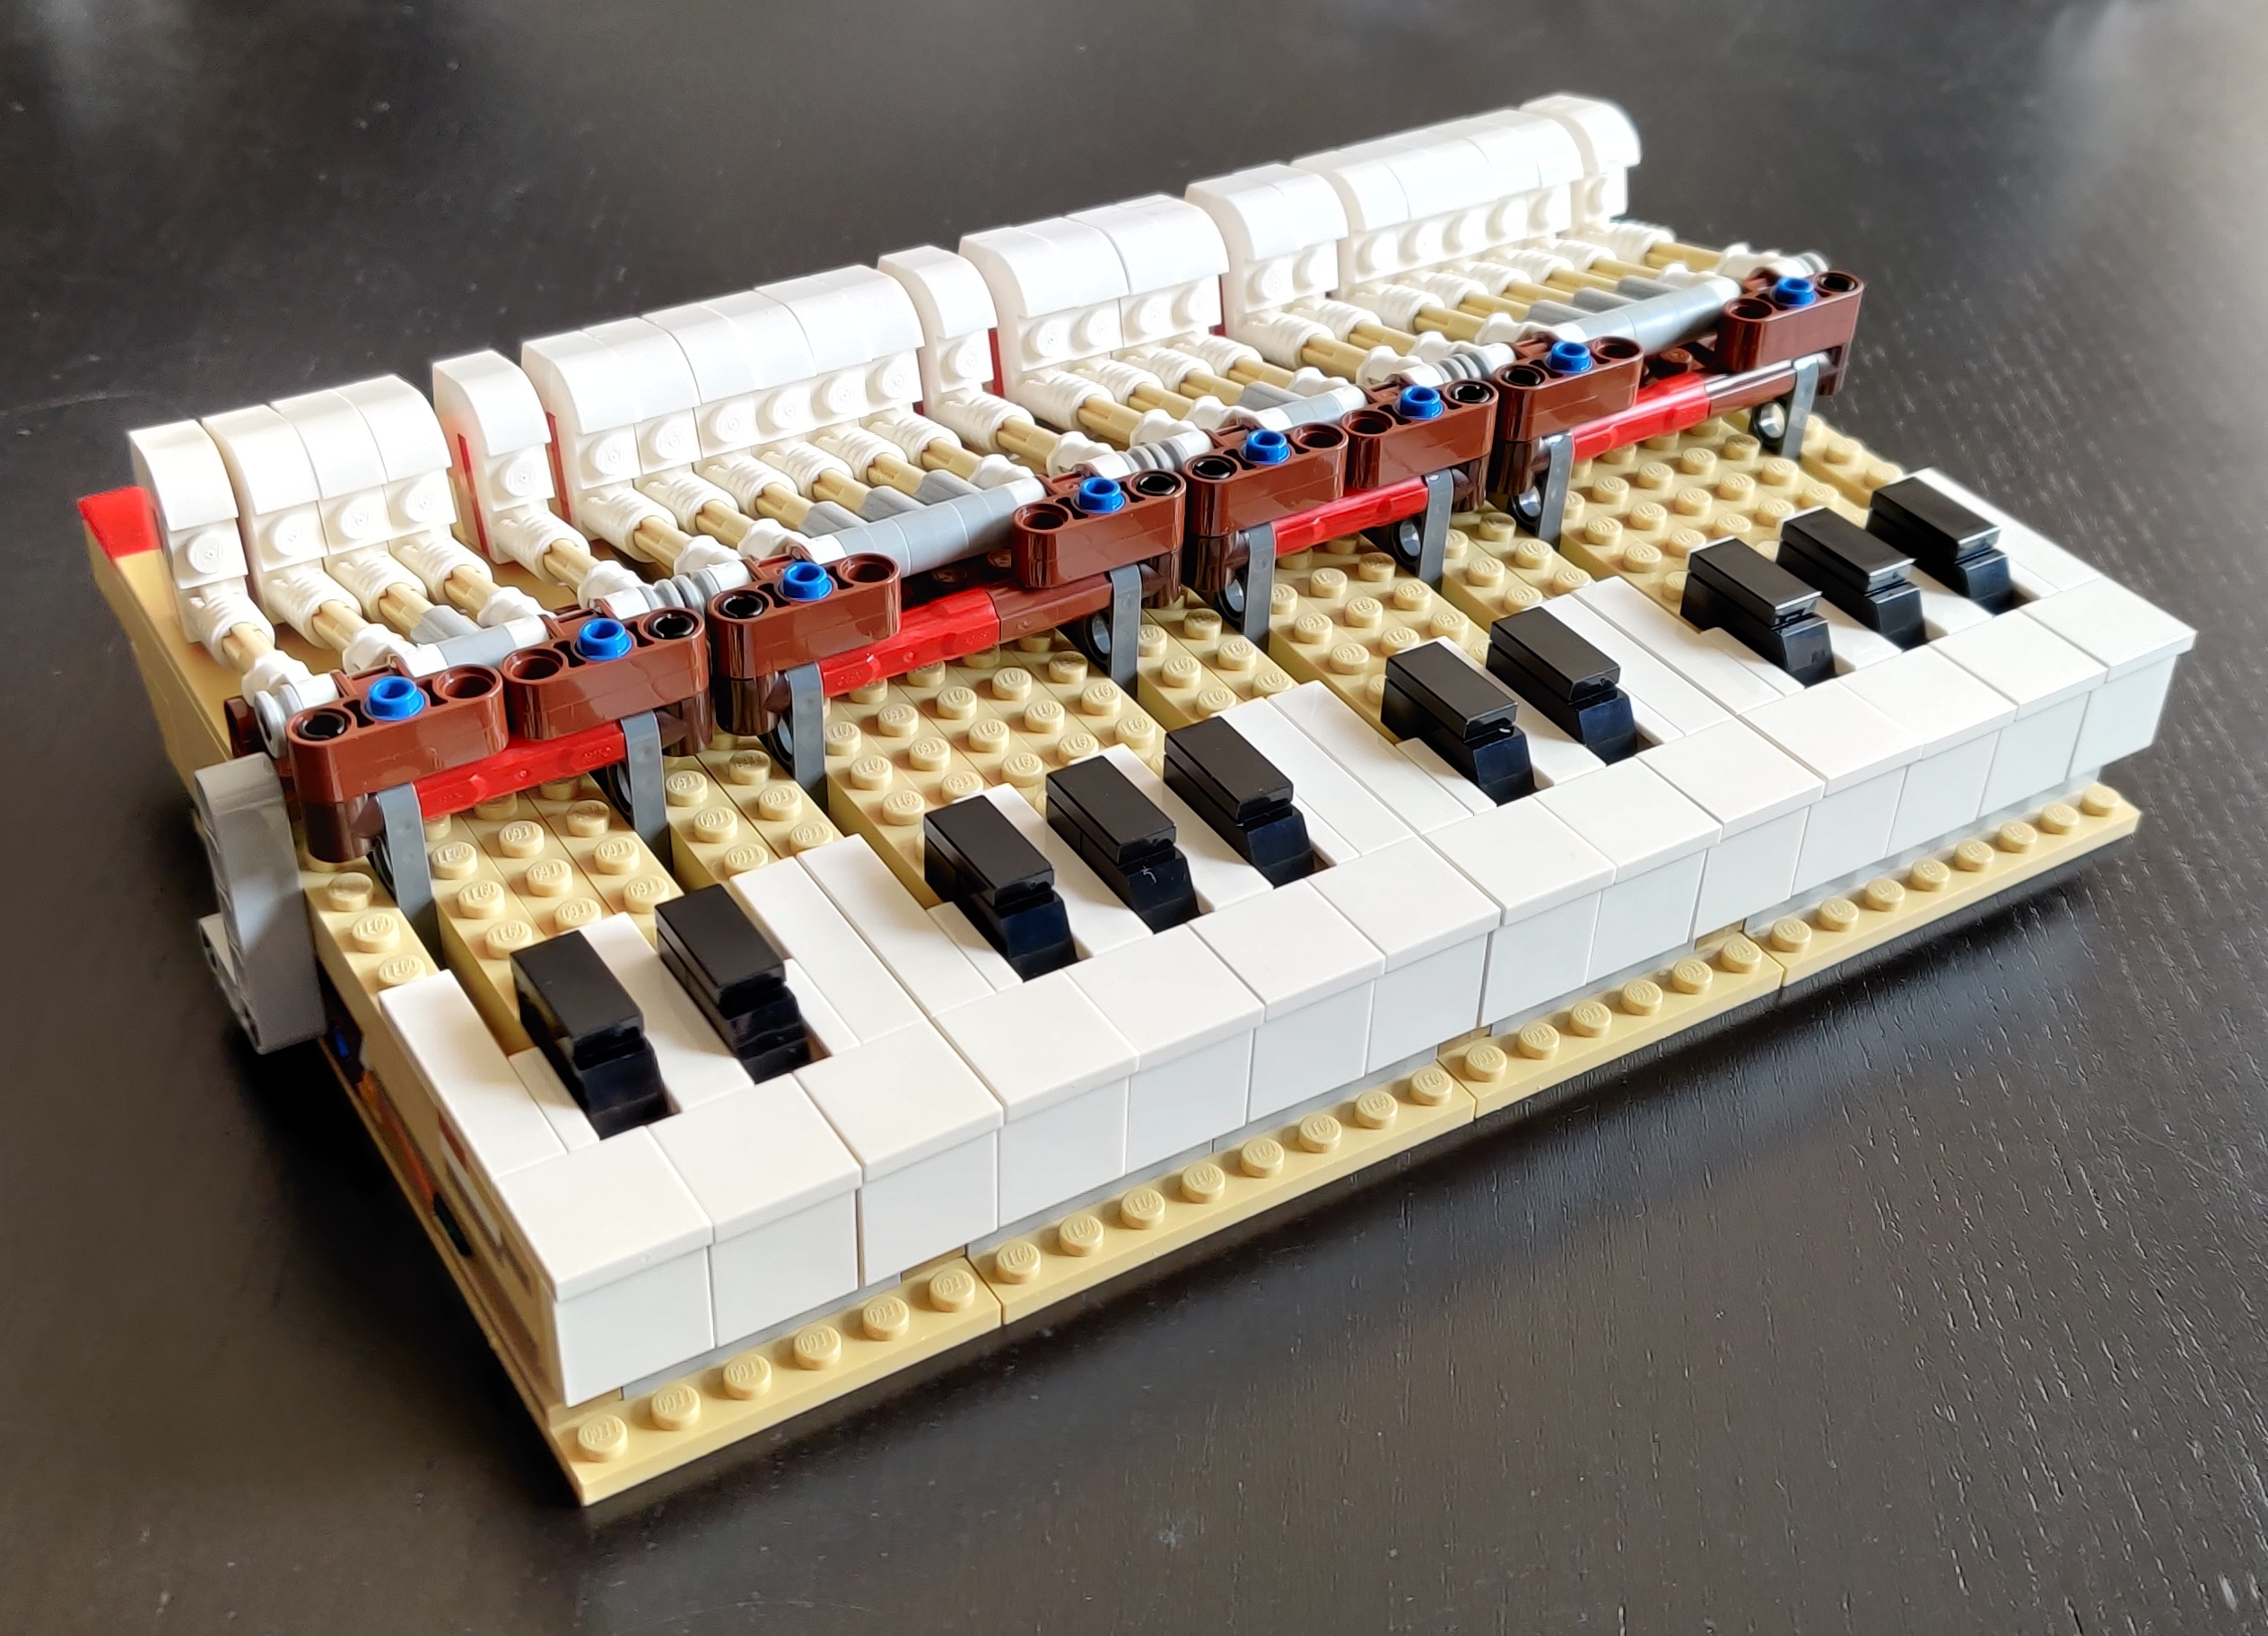 la tastiera del pianoforte Lego piano, 2 ottave + 1, con
tasti bianchi e neri in sequenza corretta; ciascun tasto ha
il suo martelletto